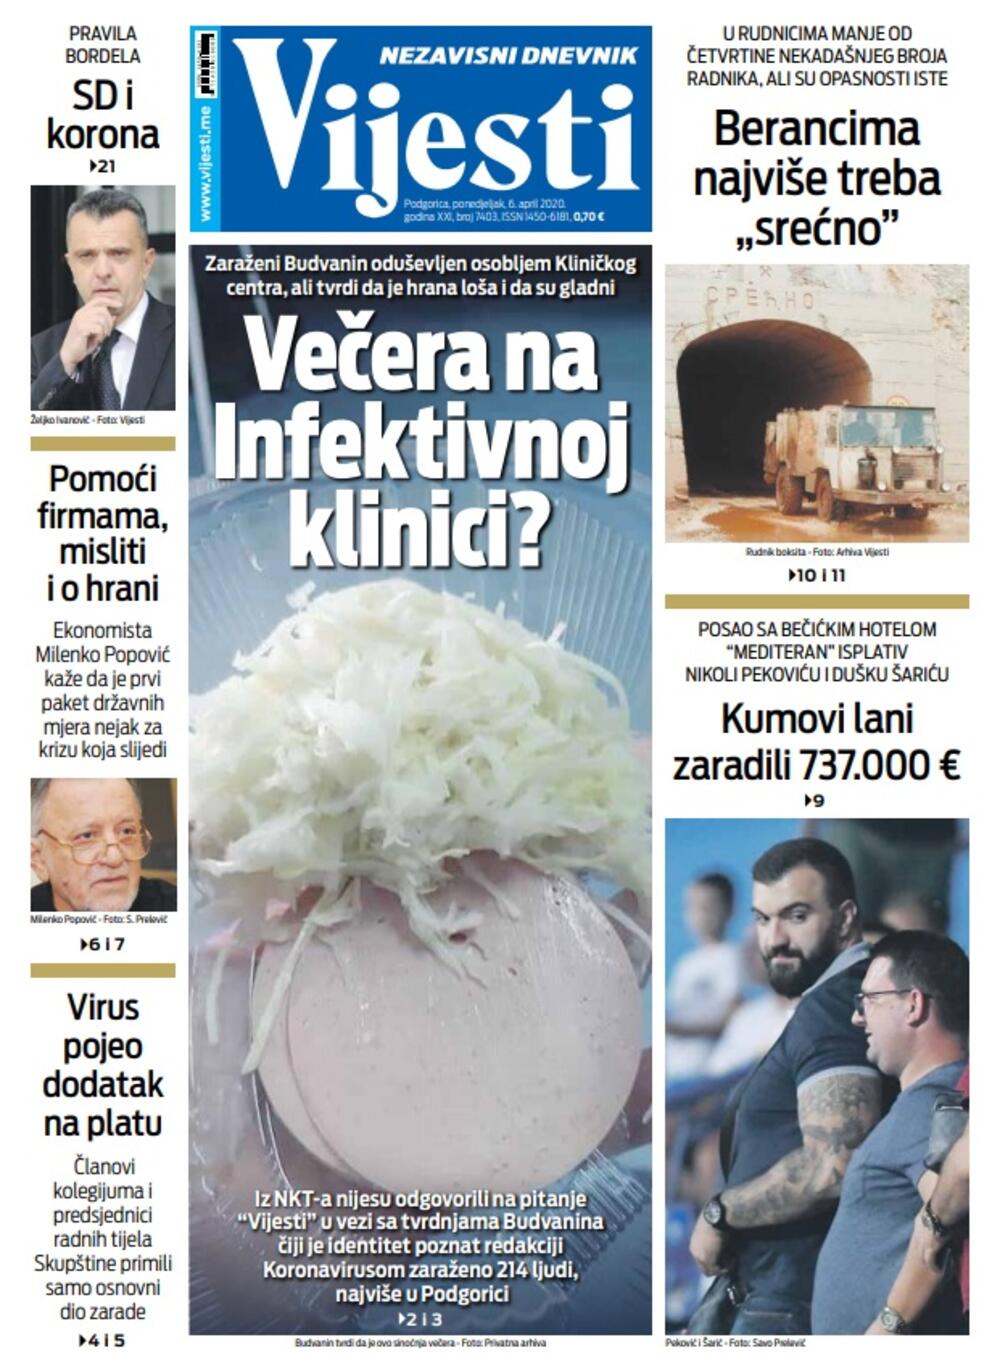 Naslovna strana "Vijesti" za ponedjeljak 6. april 2020. godine, Foto: "Vijesti"